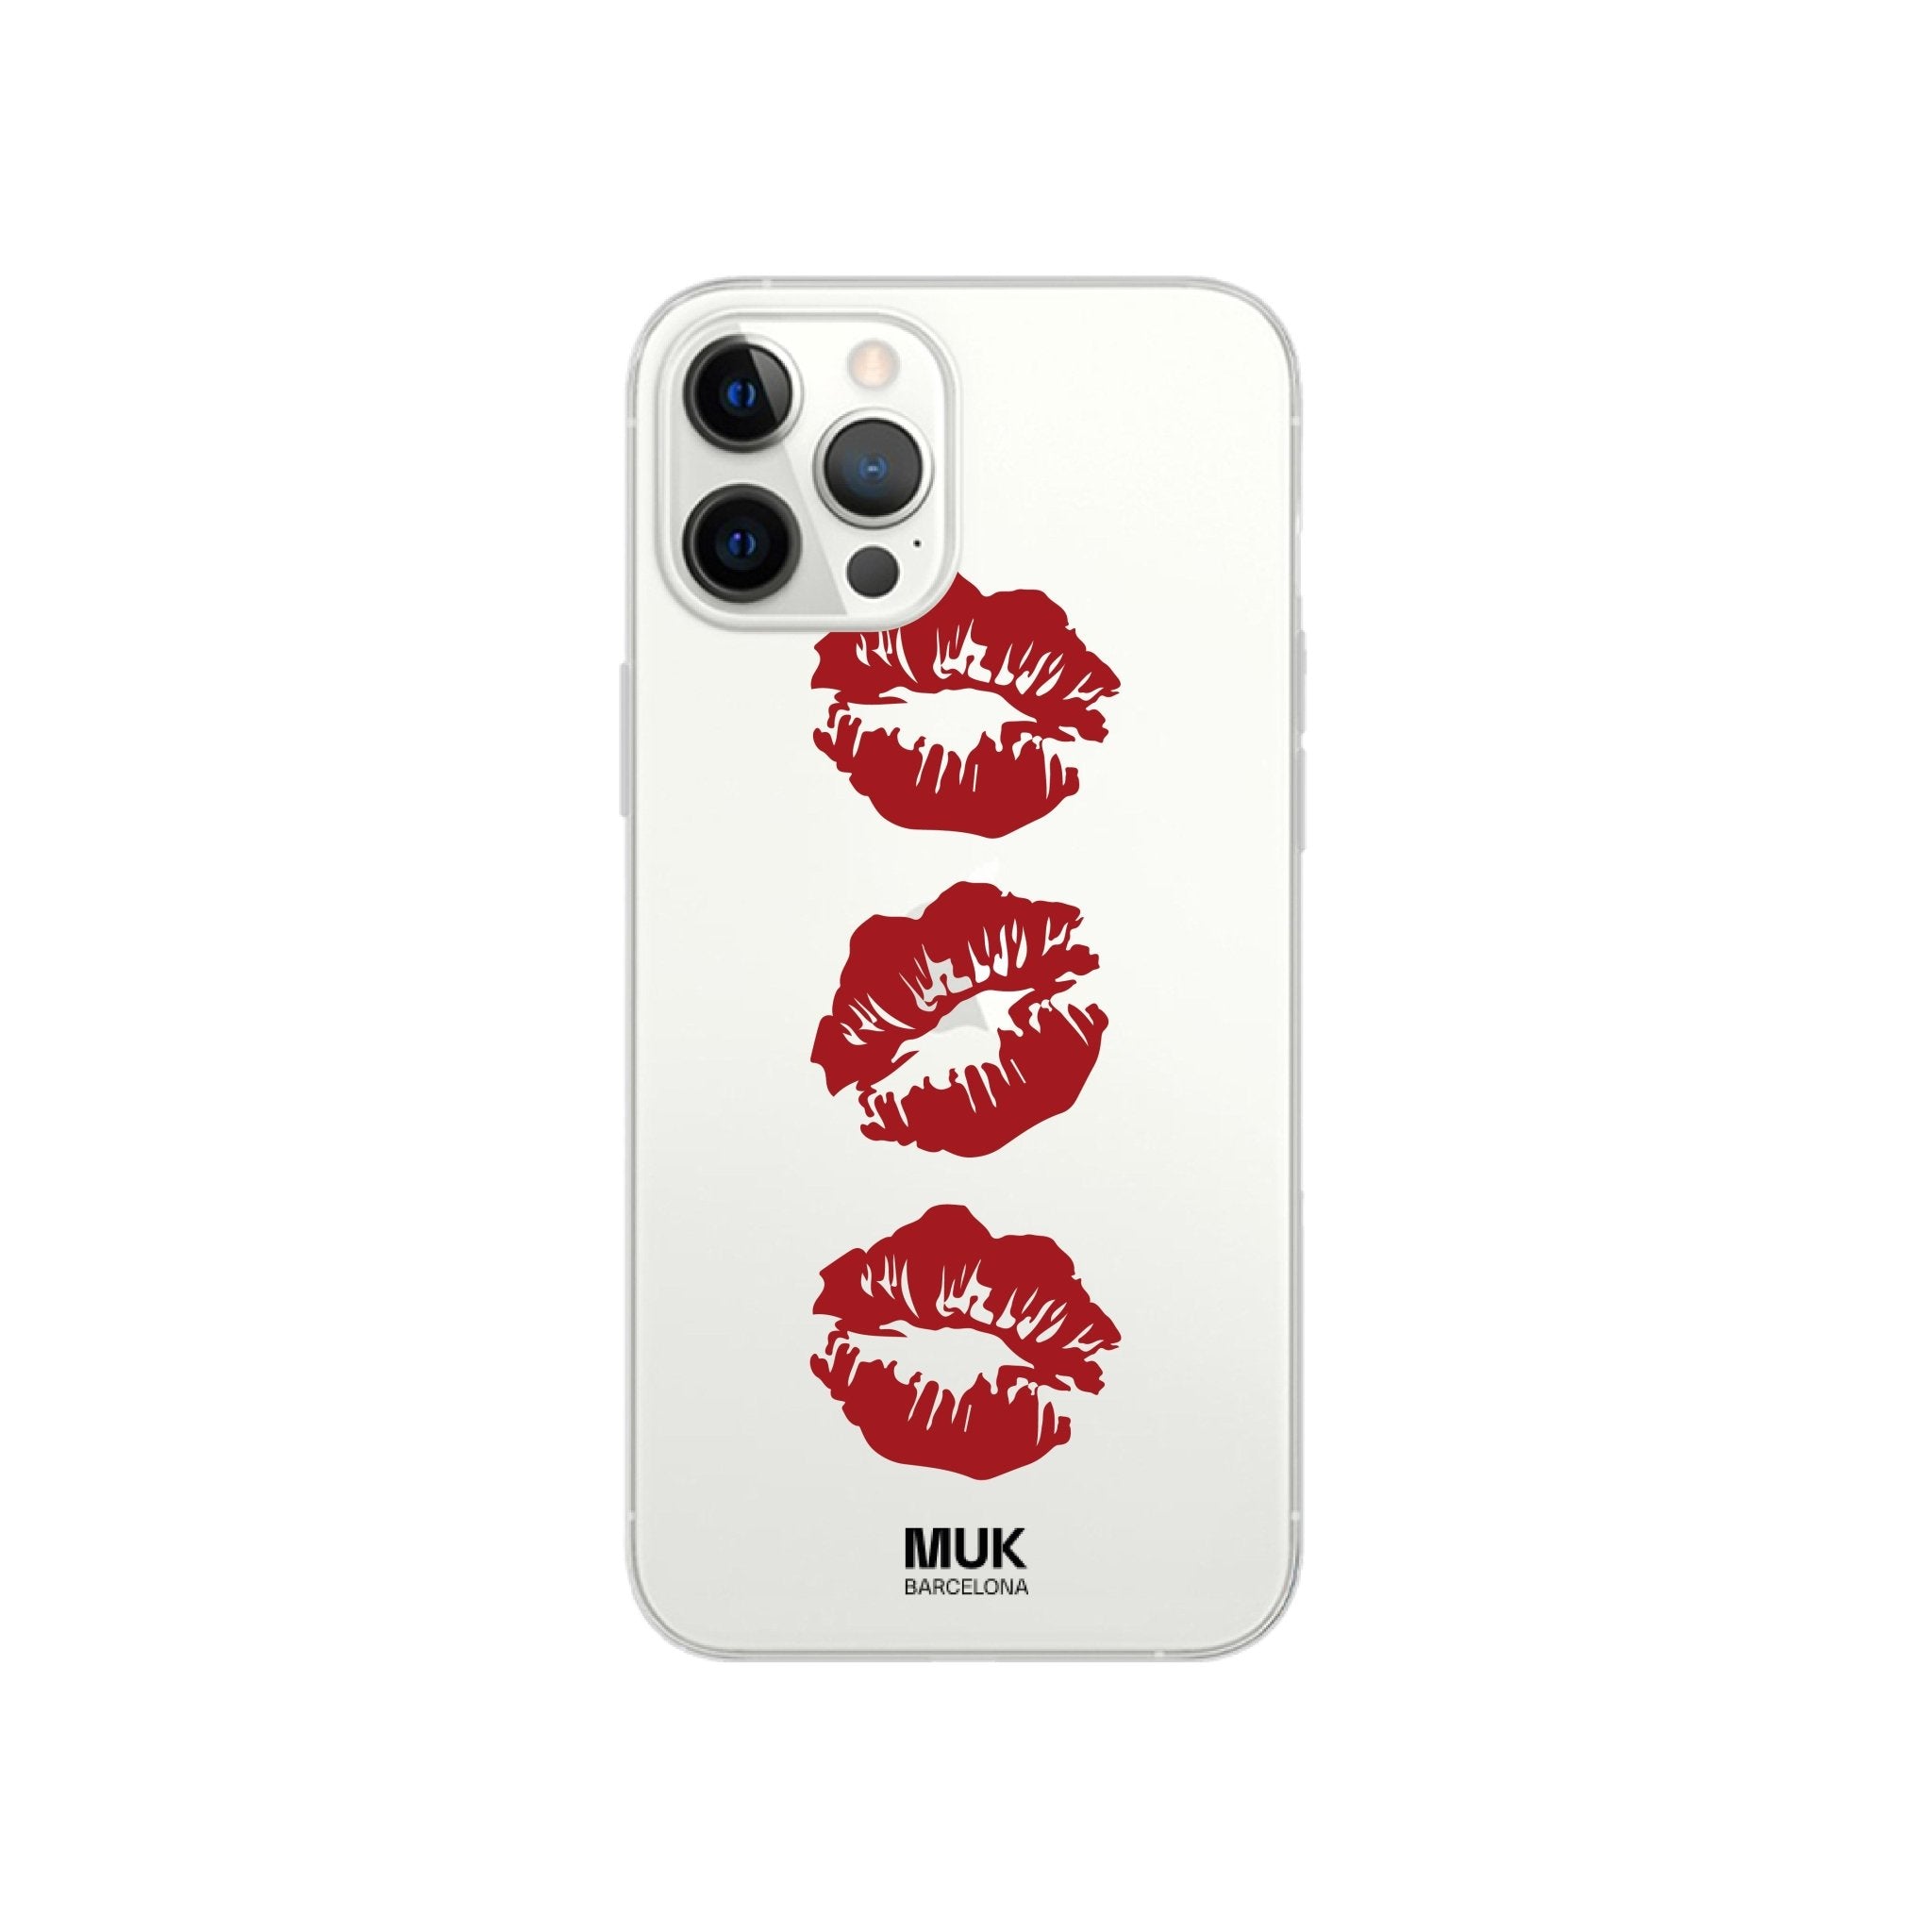 Phone Case transparente de stikcers kisses
